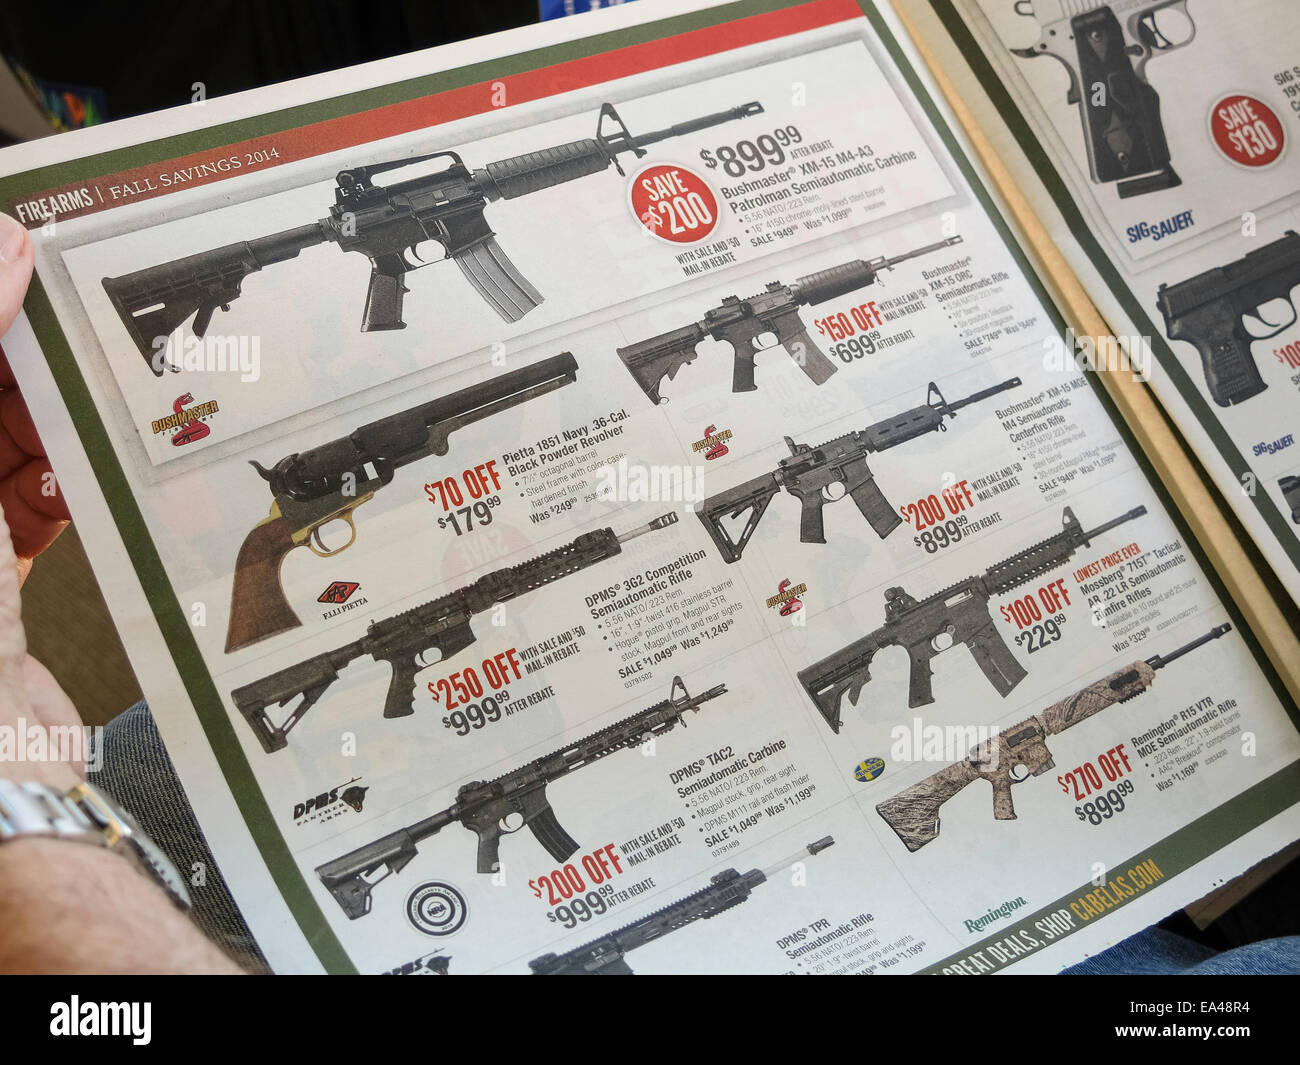 Cabela's Sporting Goods Store annonce Journal d'armes à feu, Montana, USA Banque D'Images